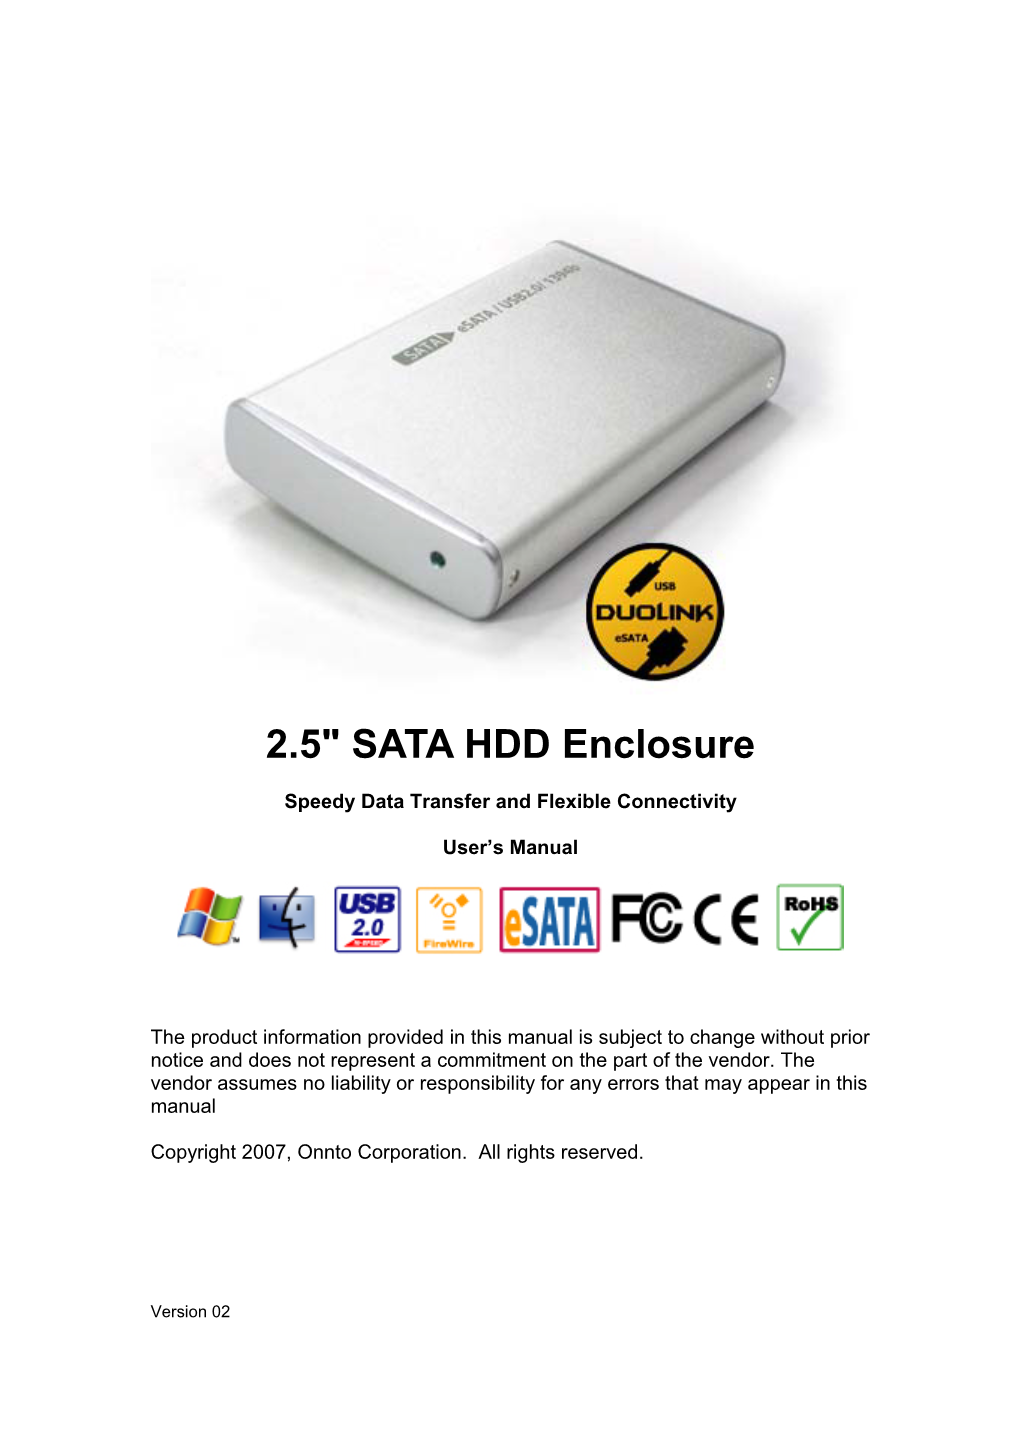 2.5" SATA HDD Enclosure